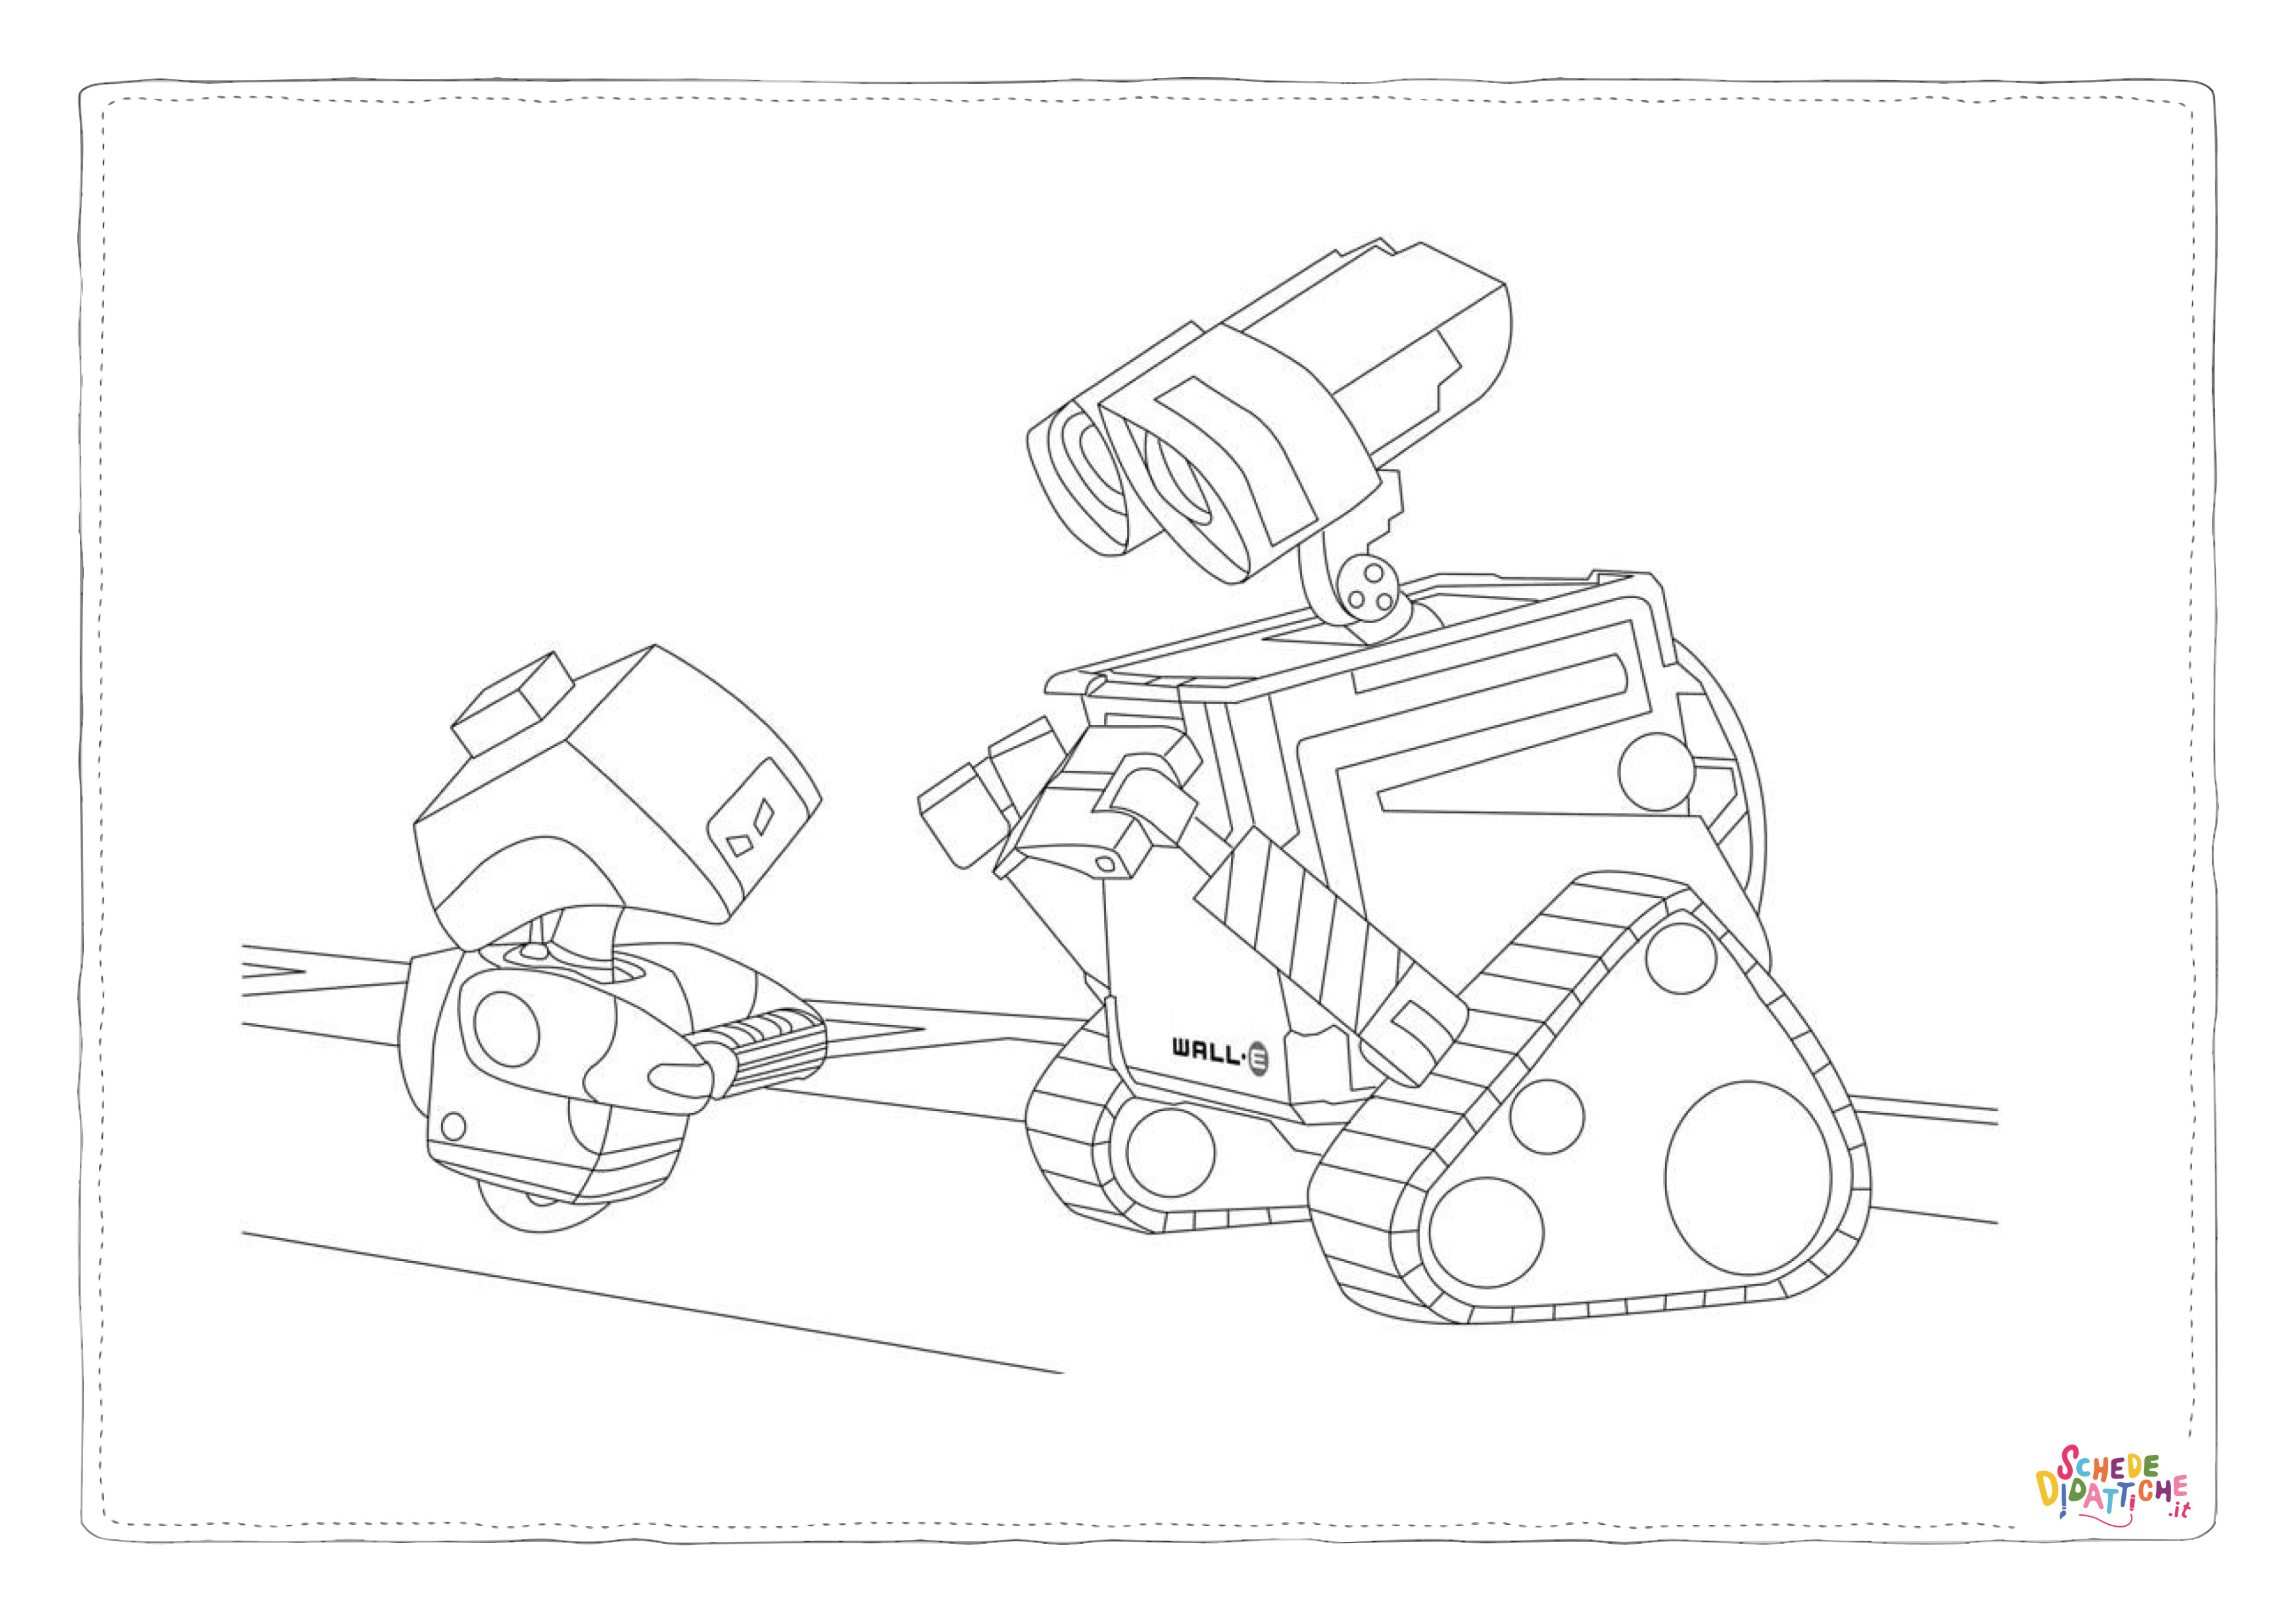 Disegno di Wall-E da stampare e colorare 1